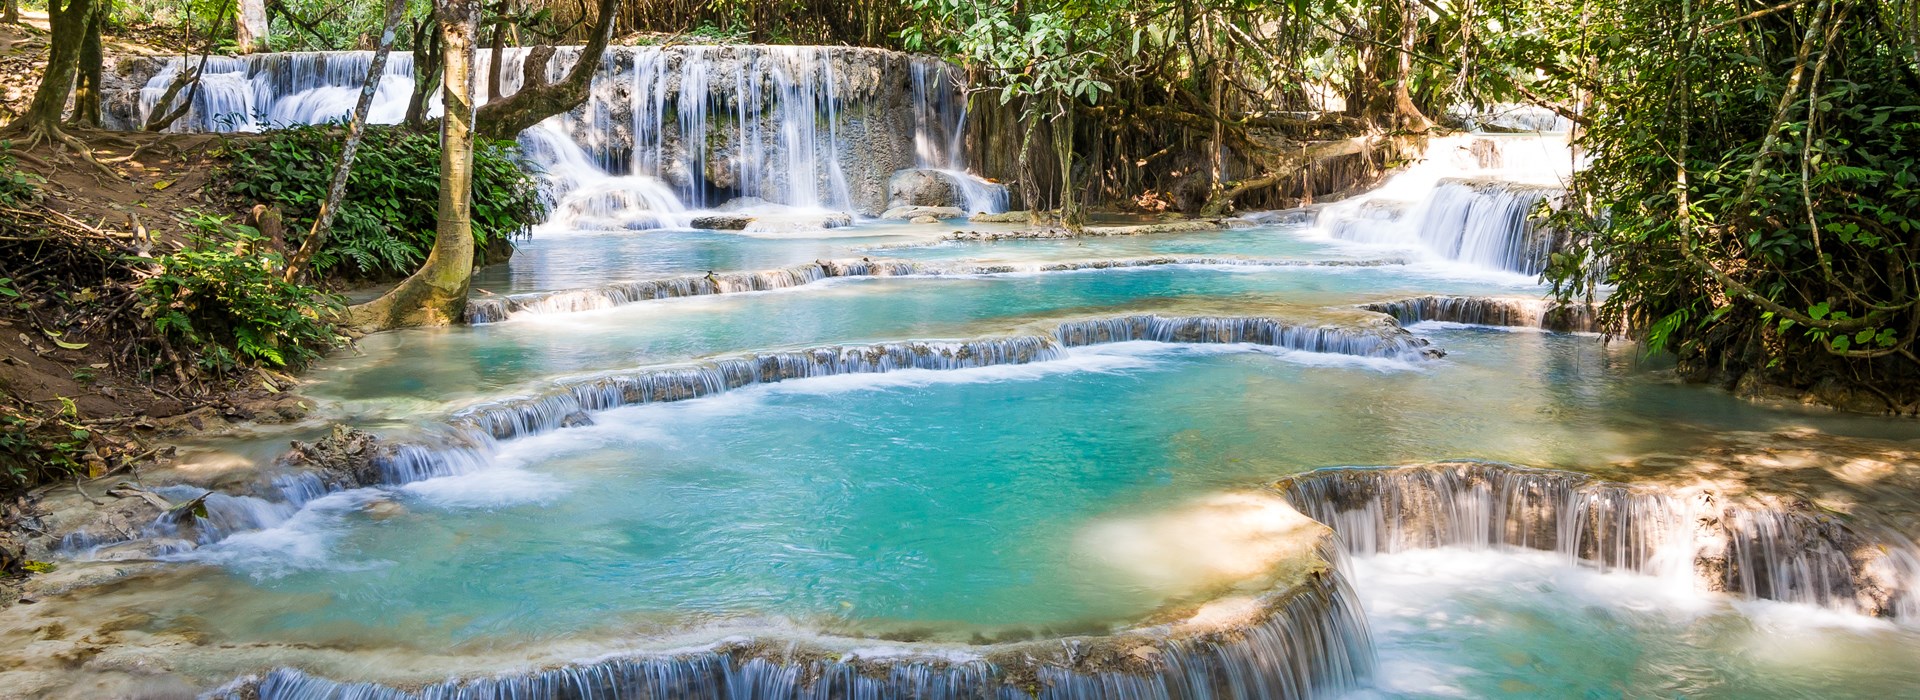 Visiter La cascade de Kuang Si (Laos) - Laos-Cambodge